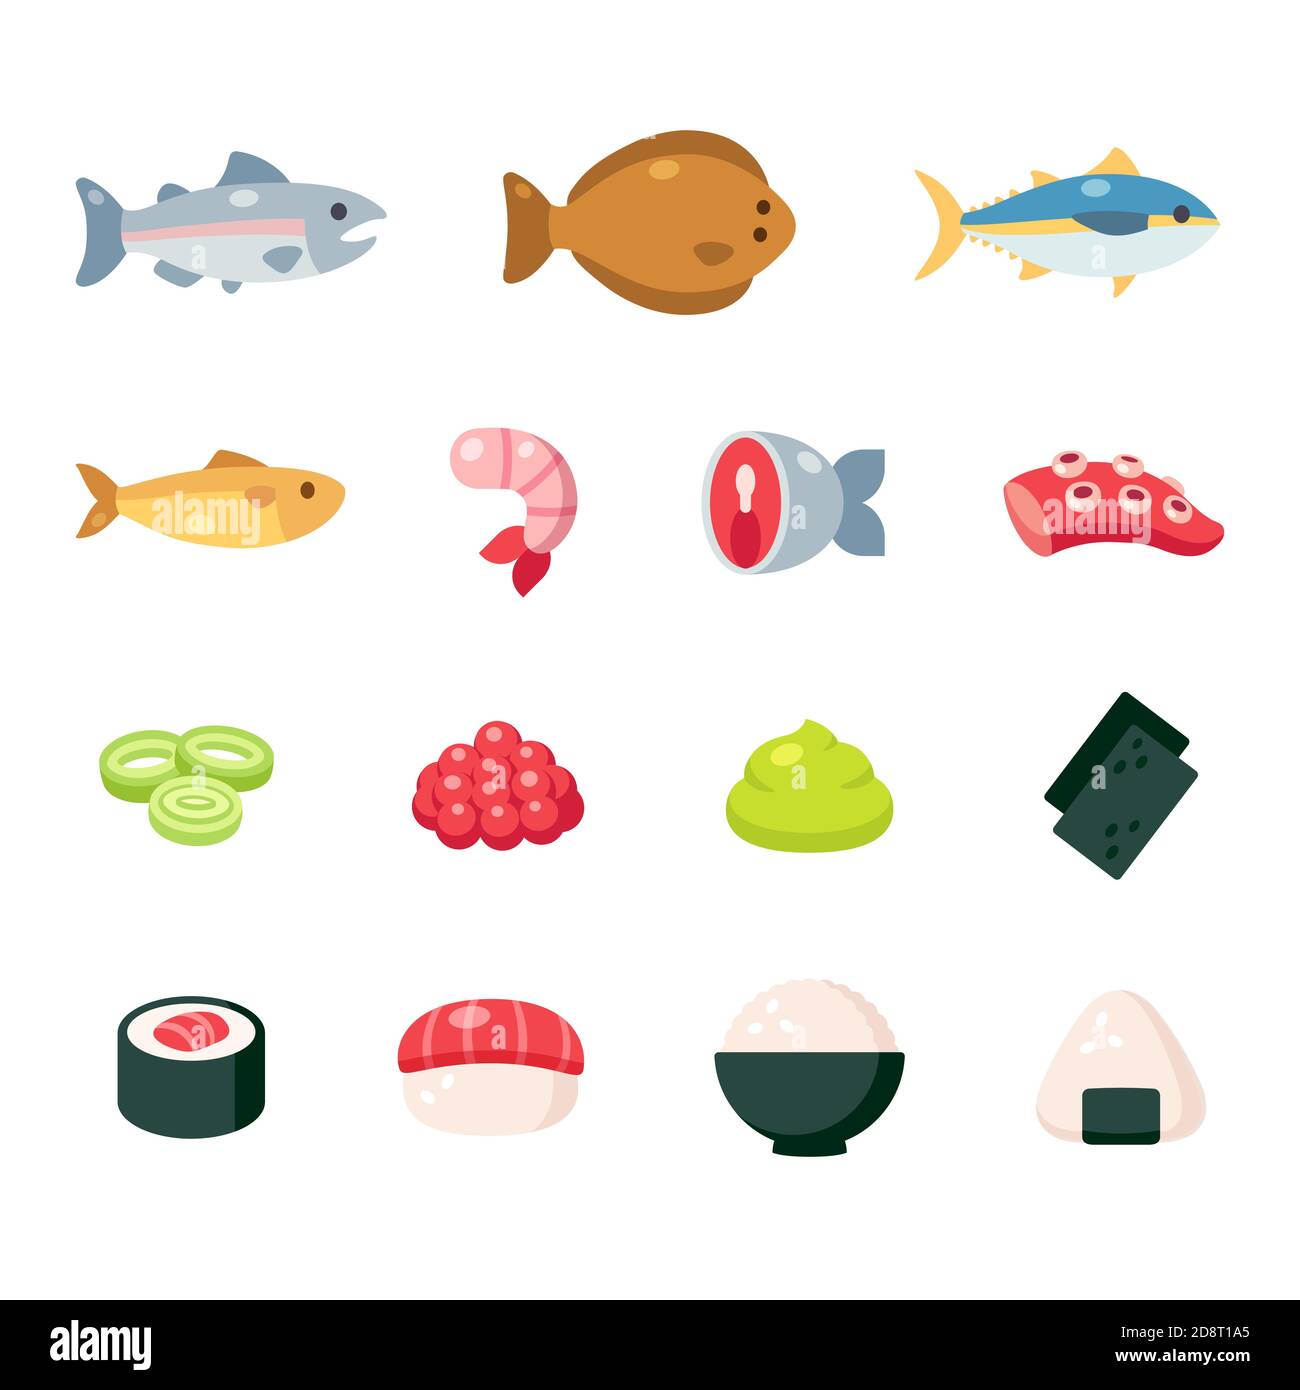 Japanische Lebensmittel Zutaten Cartoon Icon Set. Fisch und Meeresfrüchte, Sushi und Reisgerichte, niedliche einfache Vektorgrafiken. Stock Vektor